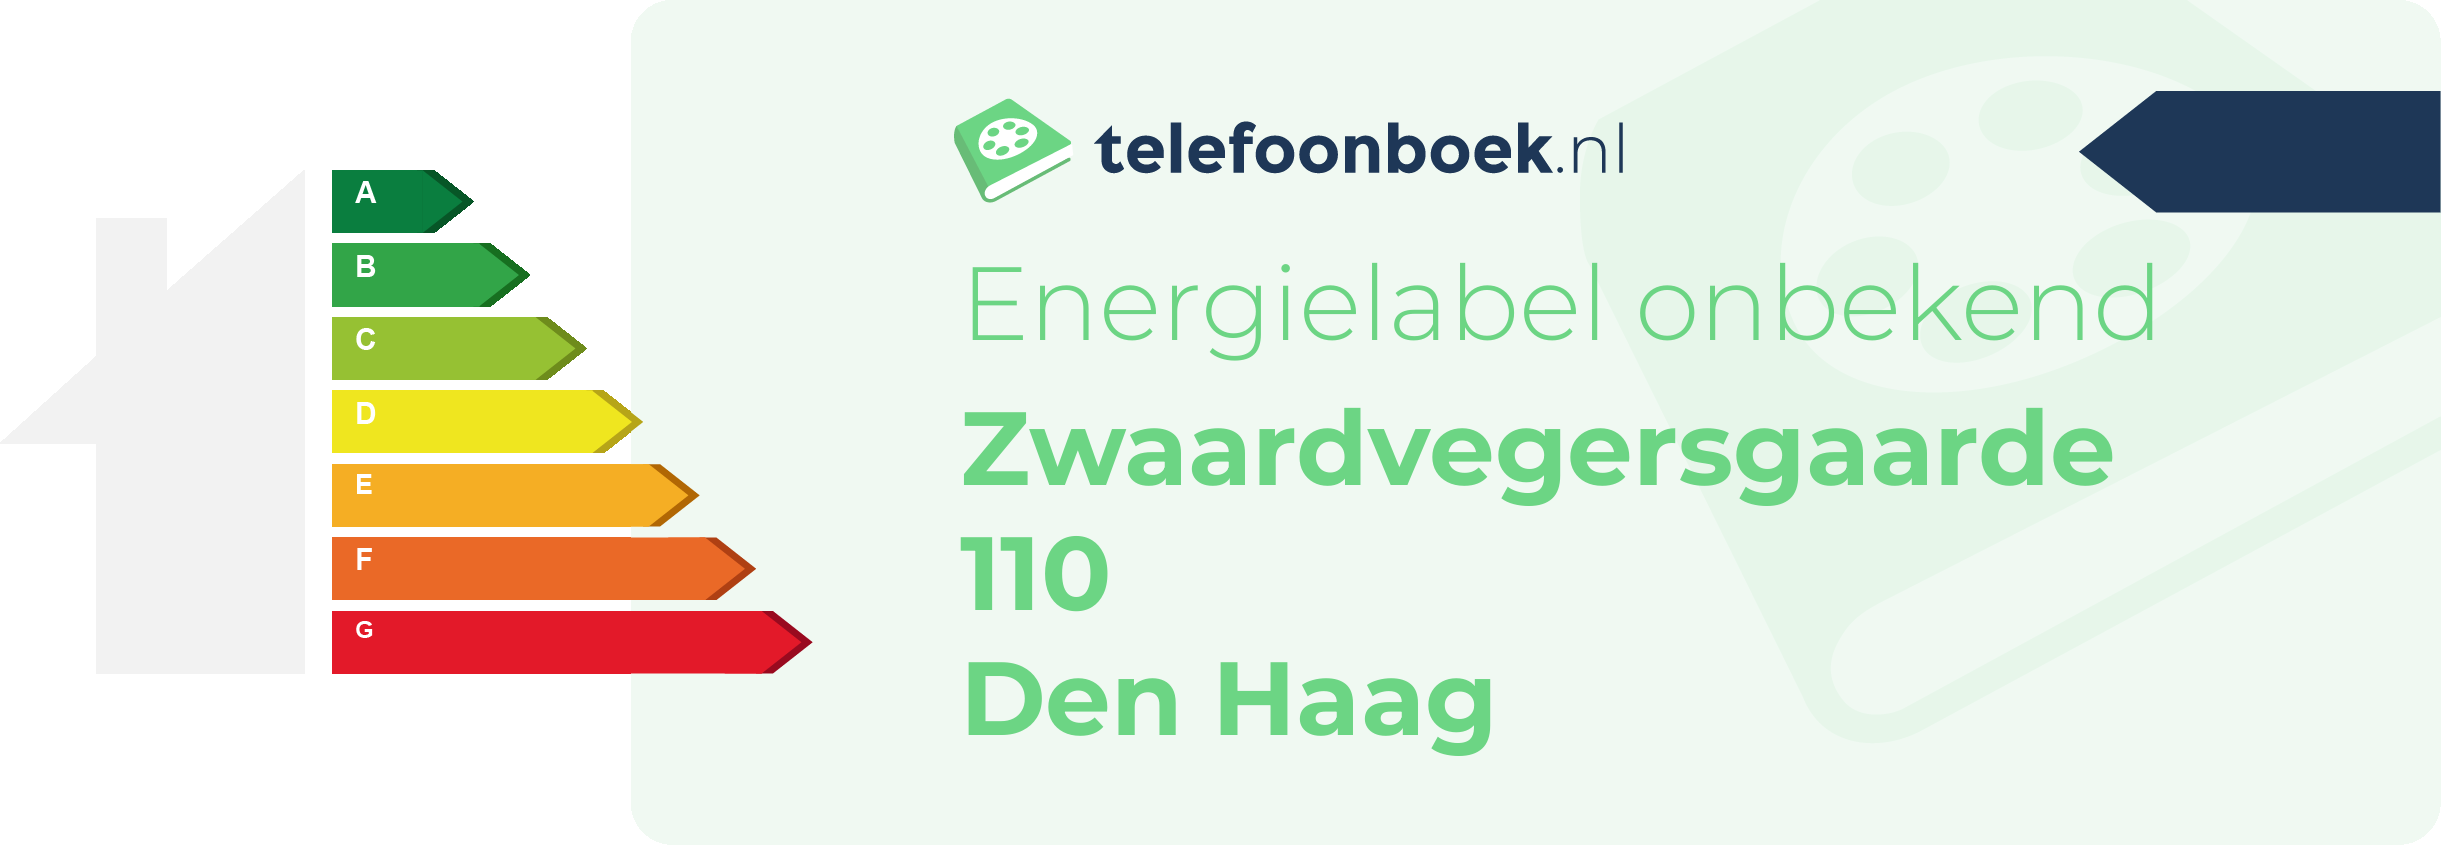 Energielabel Zwaardvegersgaarde 110 Den Haag